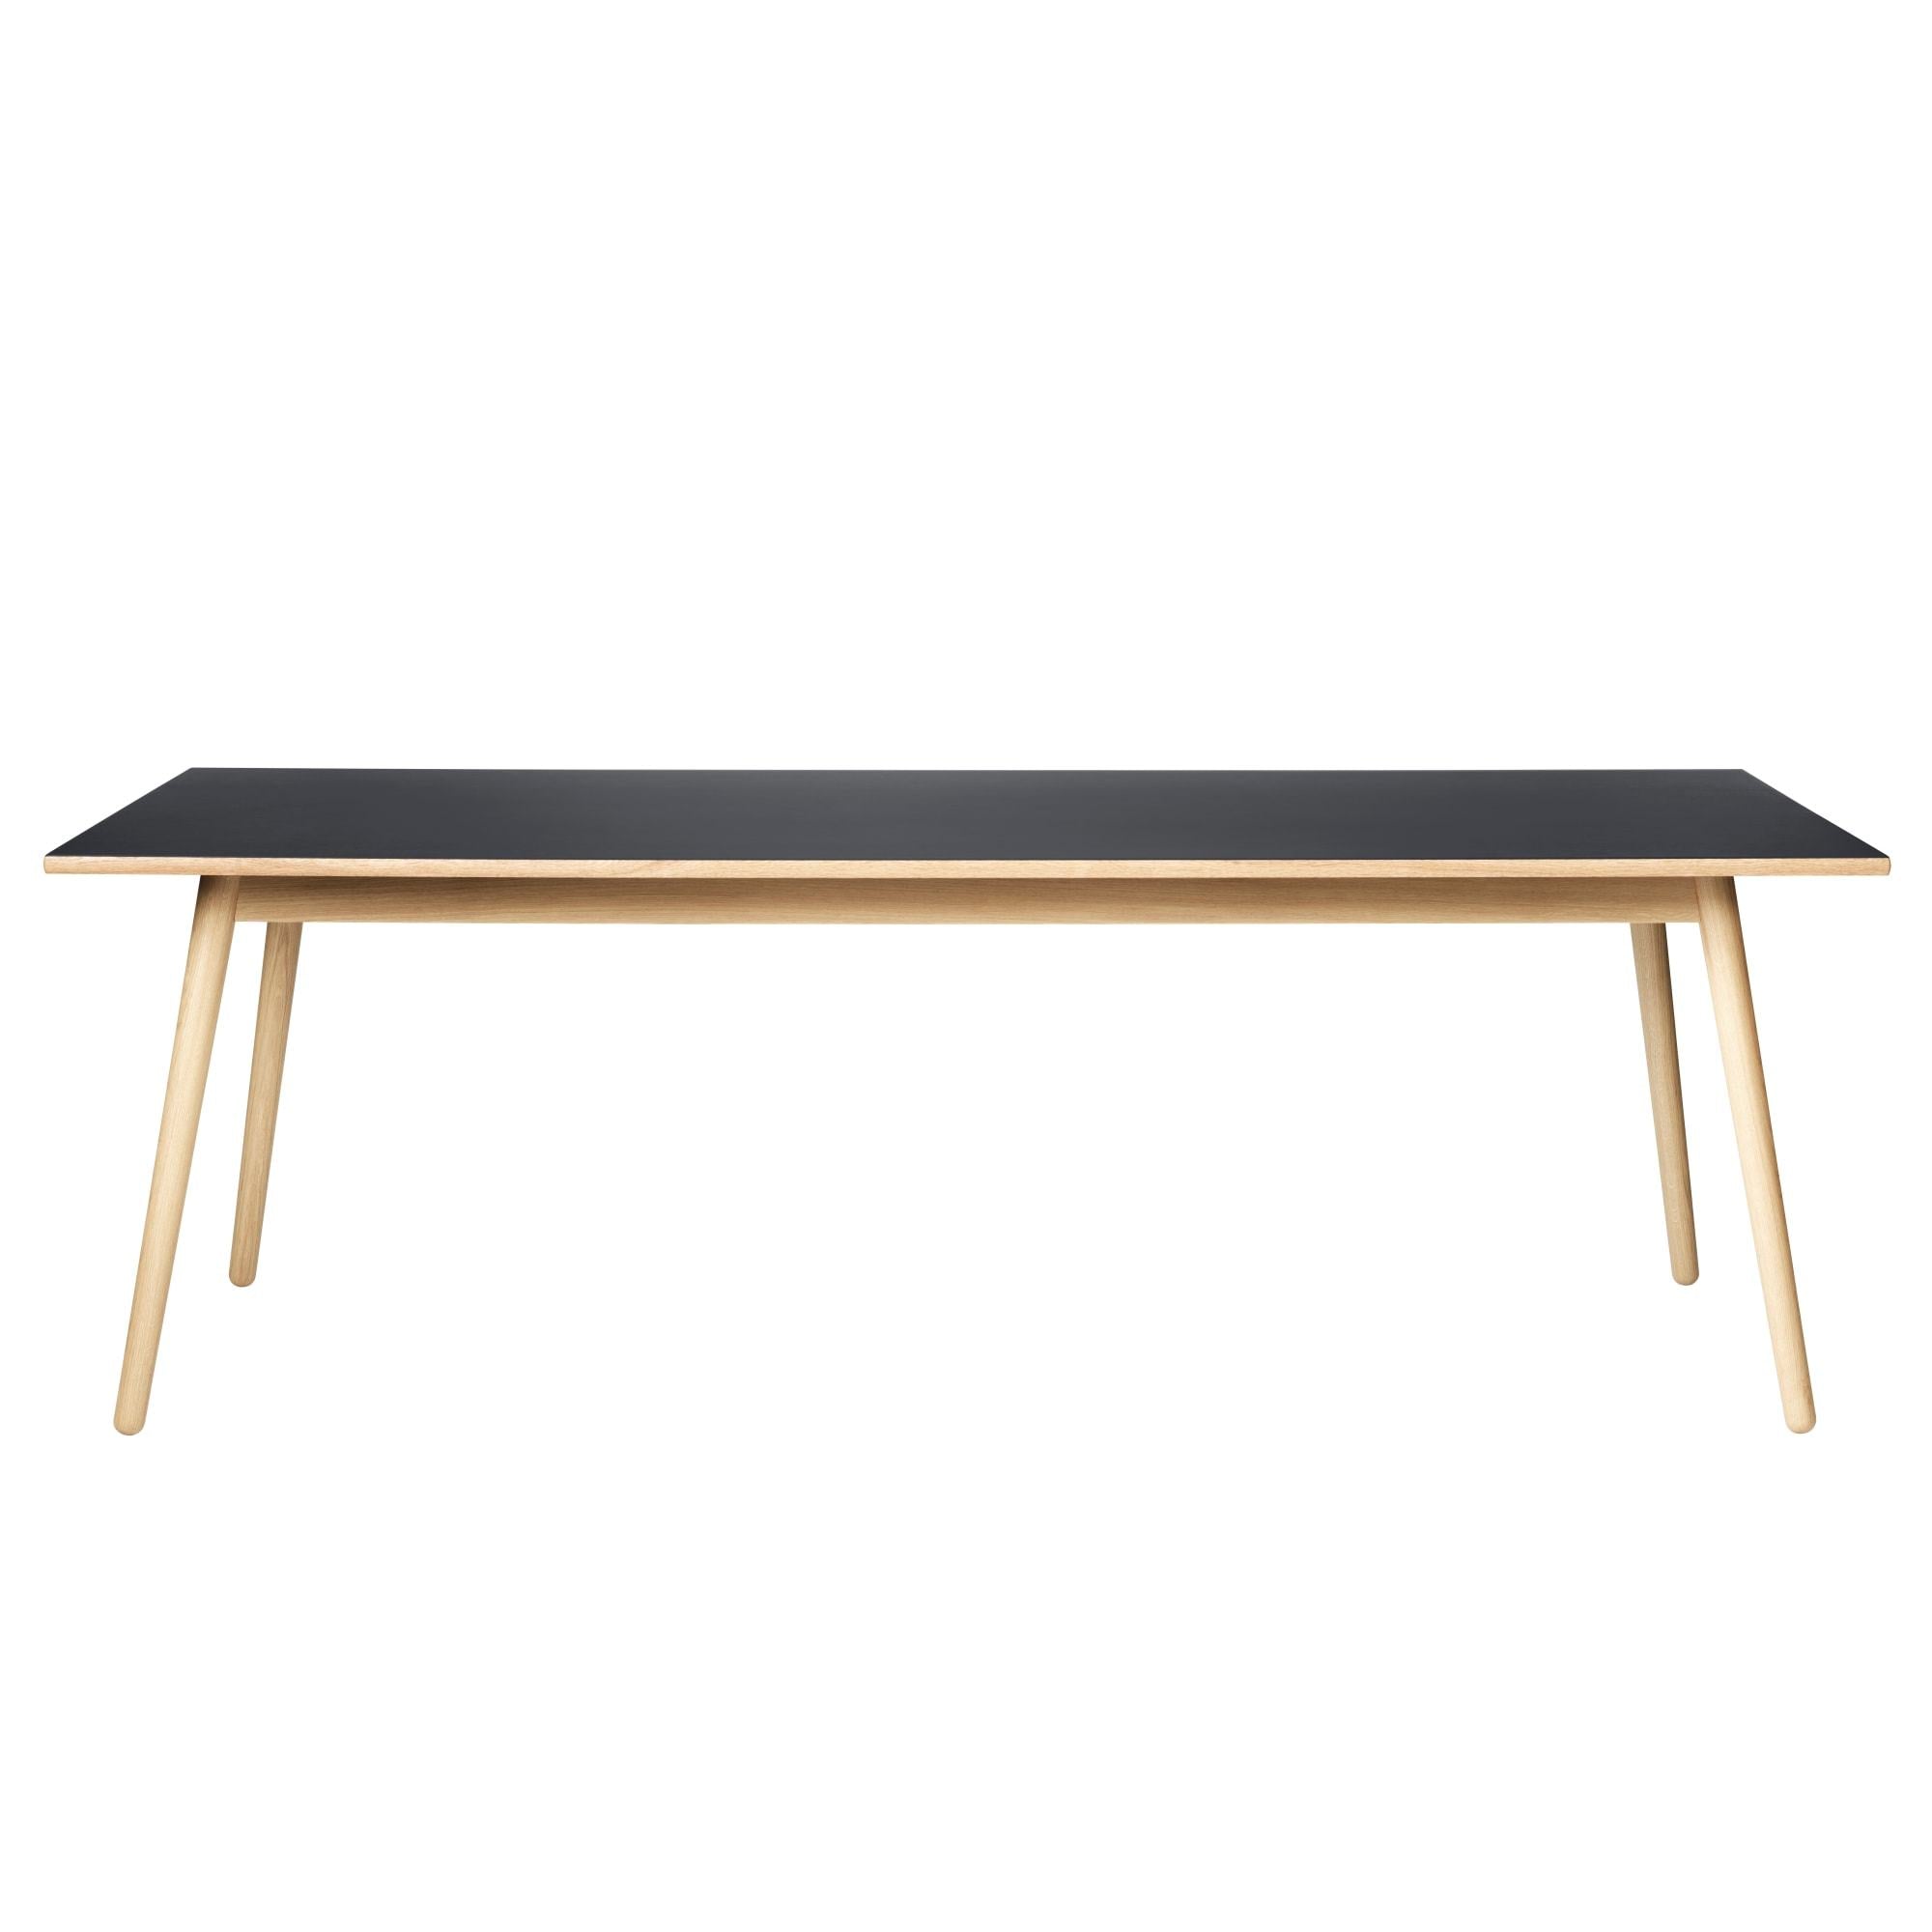 Fdb Møbler C35 B matbord ek, mörkgrå linoleum, 95x220 cm